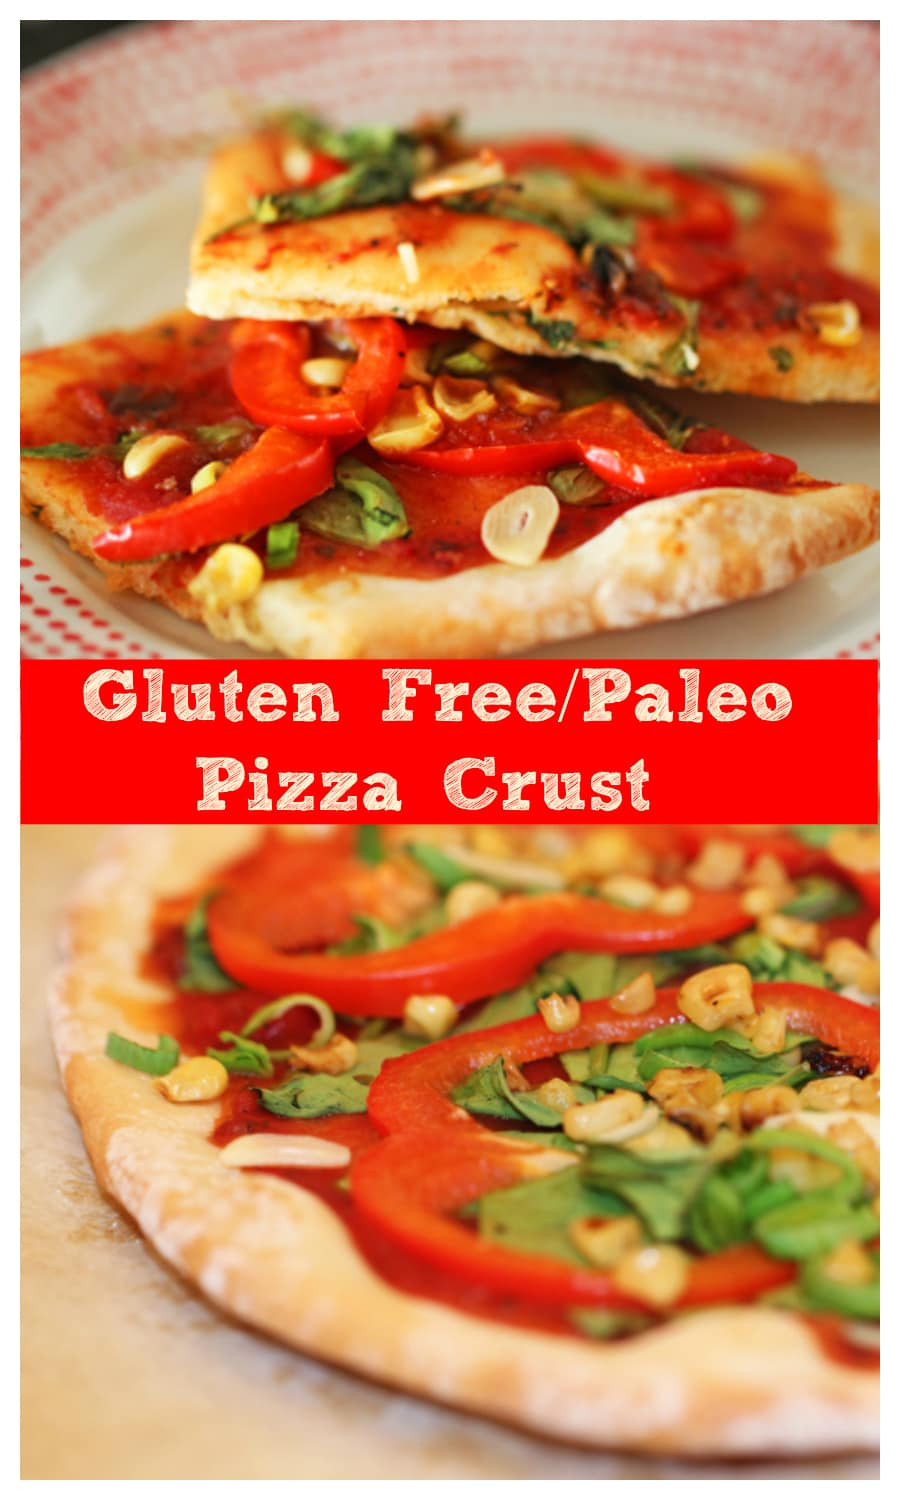 Gluten Free Pizza Recipes
 Best Gluten Free Pizza Crust Recipe